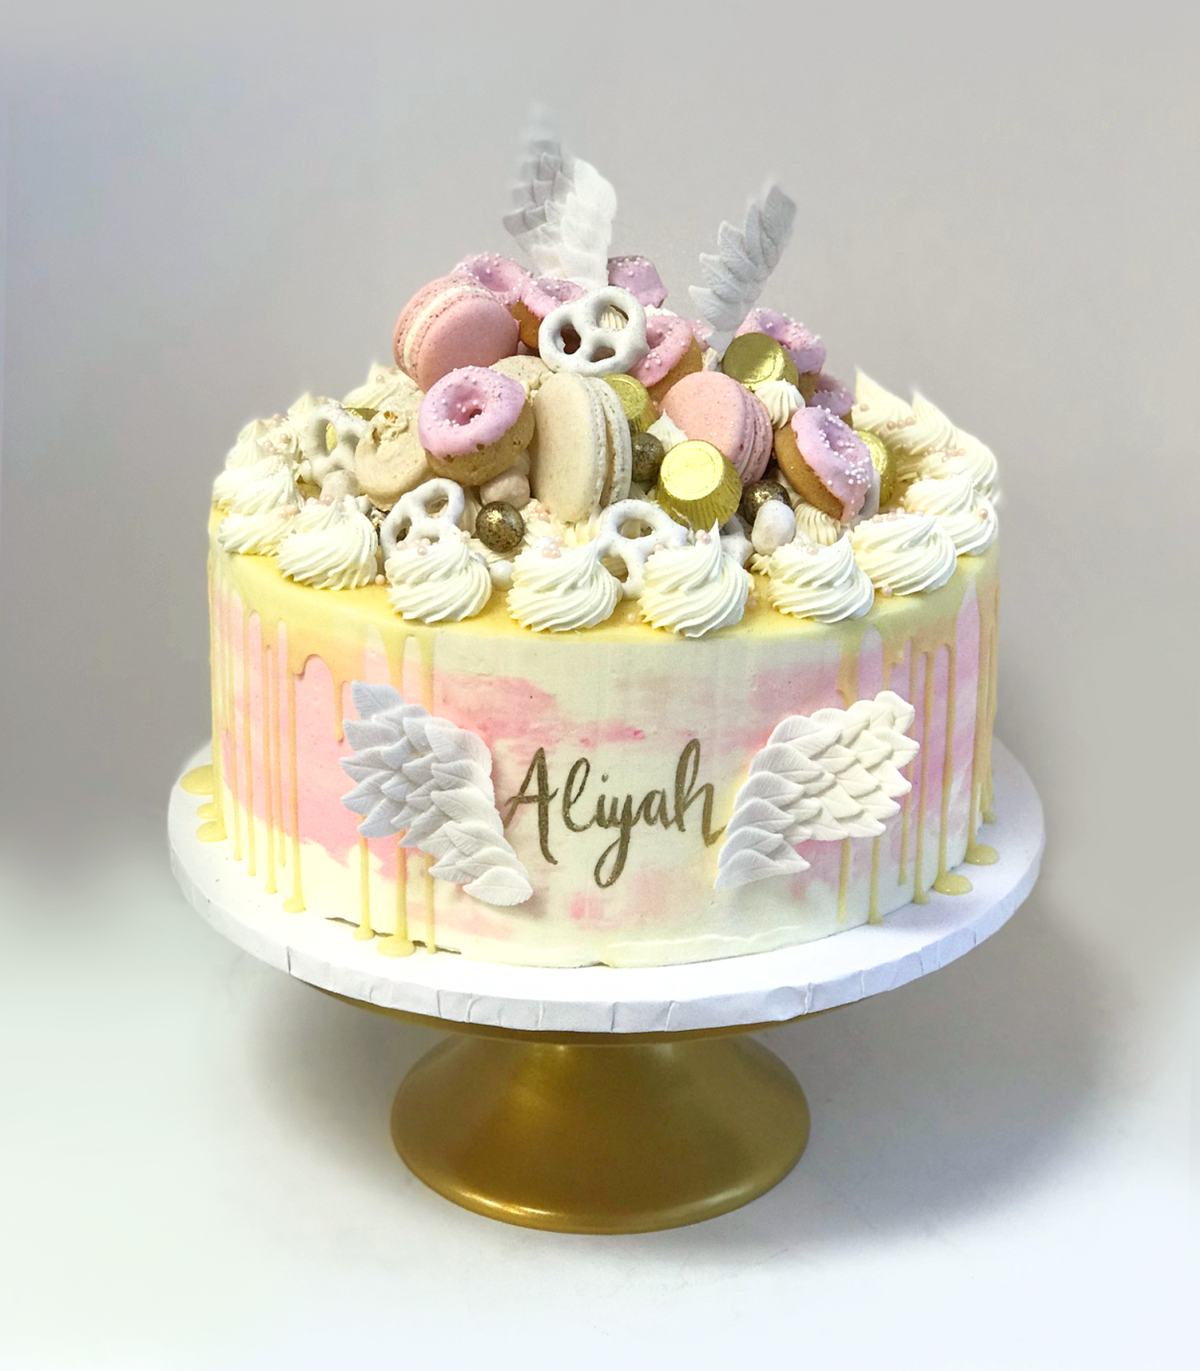 Whippt Desserts - Angel Cake June 2018